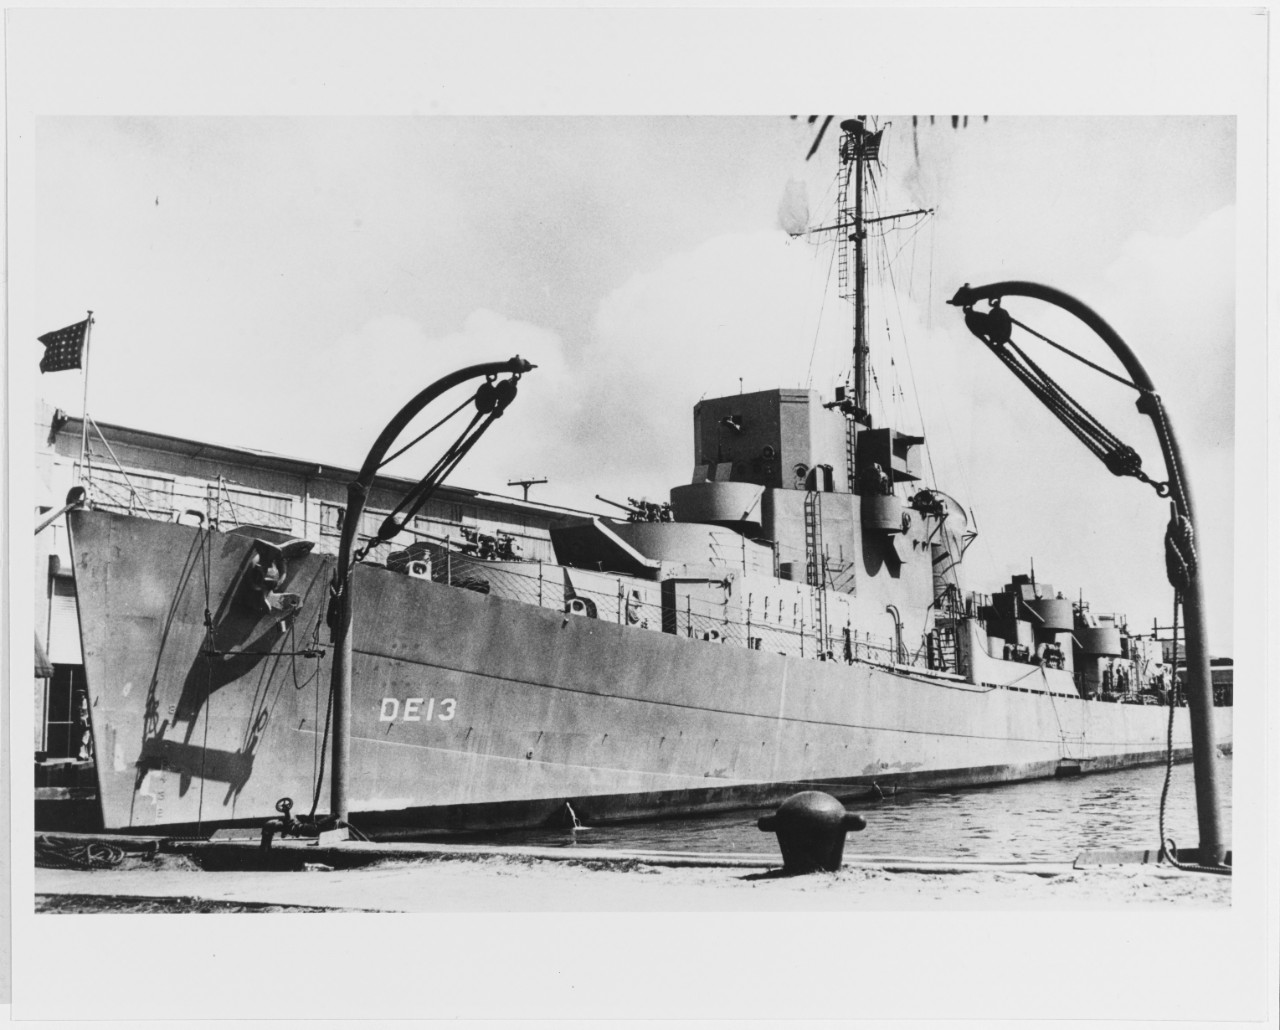 USS BRENNAN (DE-13) circa March 1943